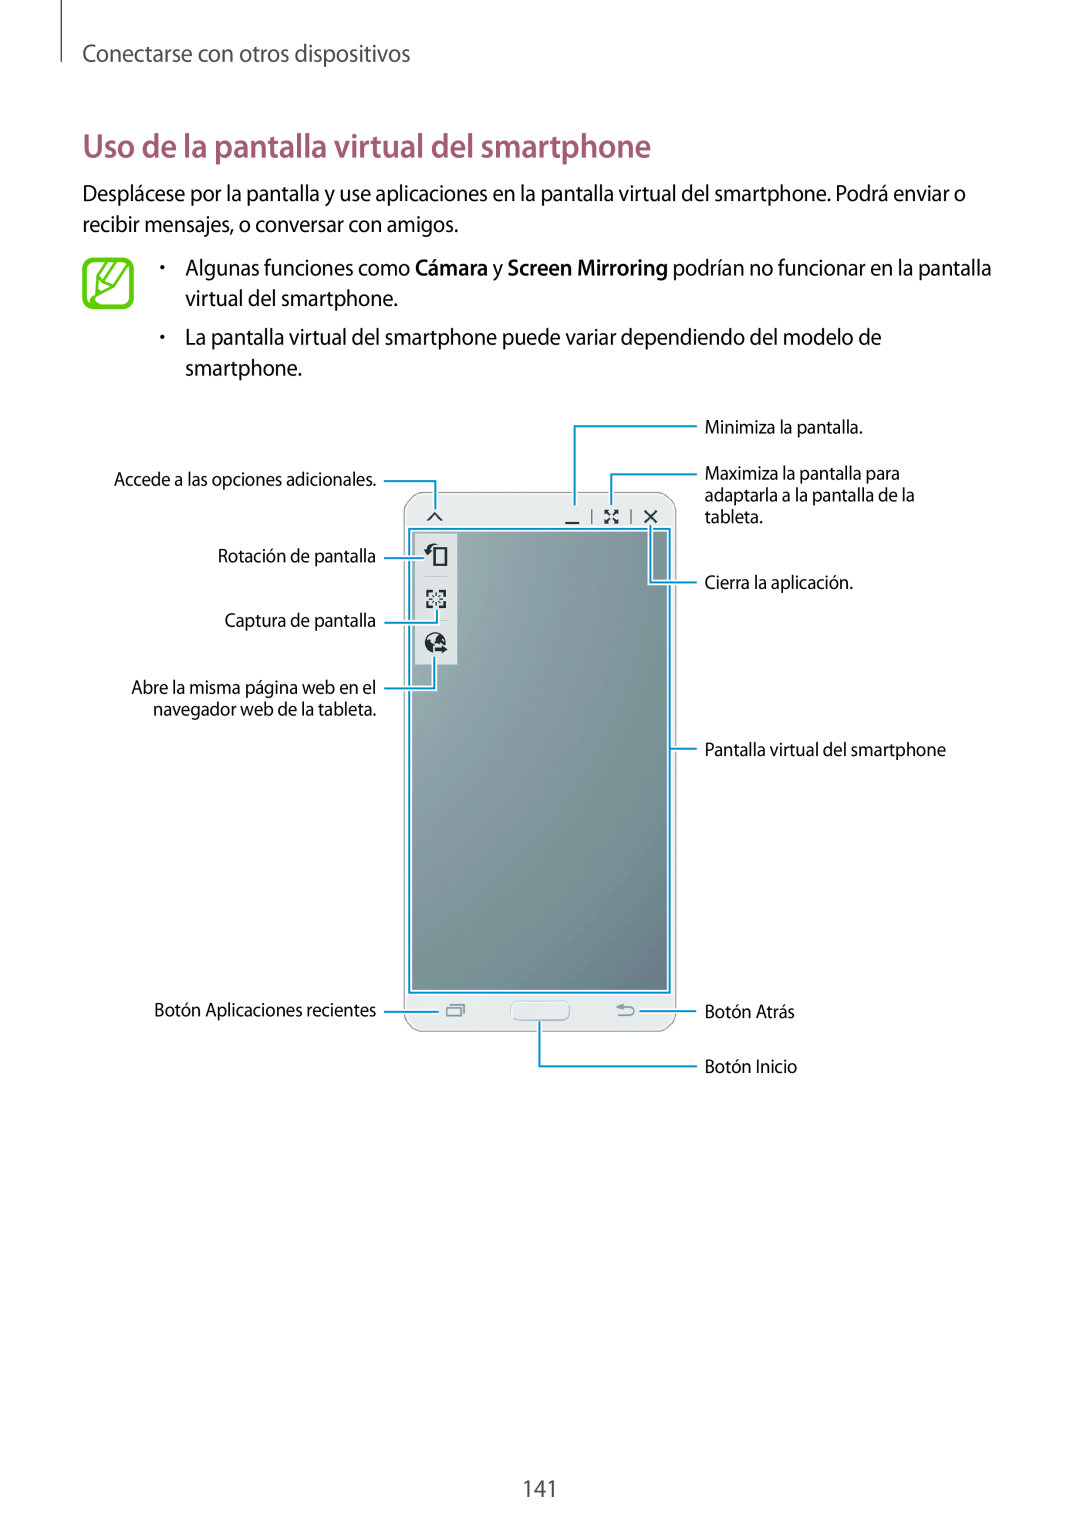 Samsung SM-T700NTSATGY Uso de la pantalla virtual del smartphone, Conectarse con otros dispositivos, Captura de pantalla 